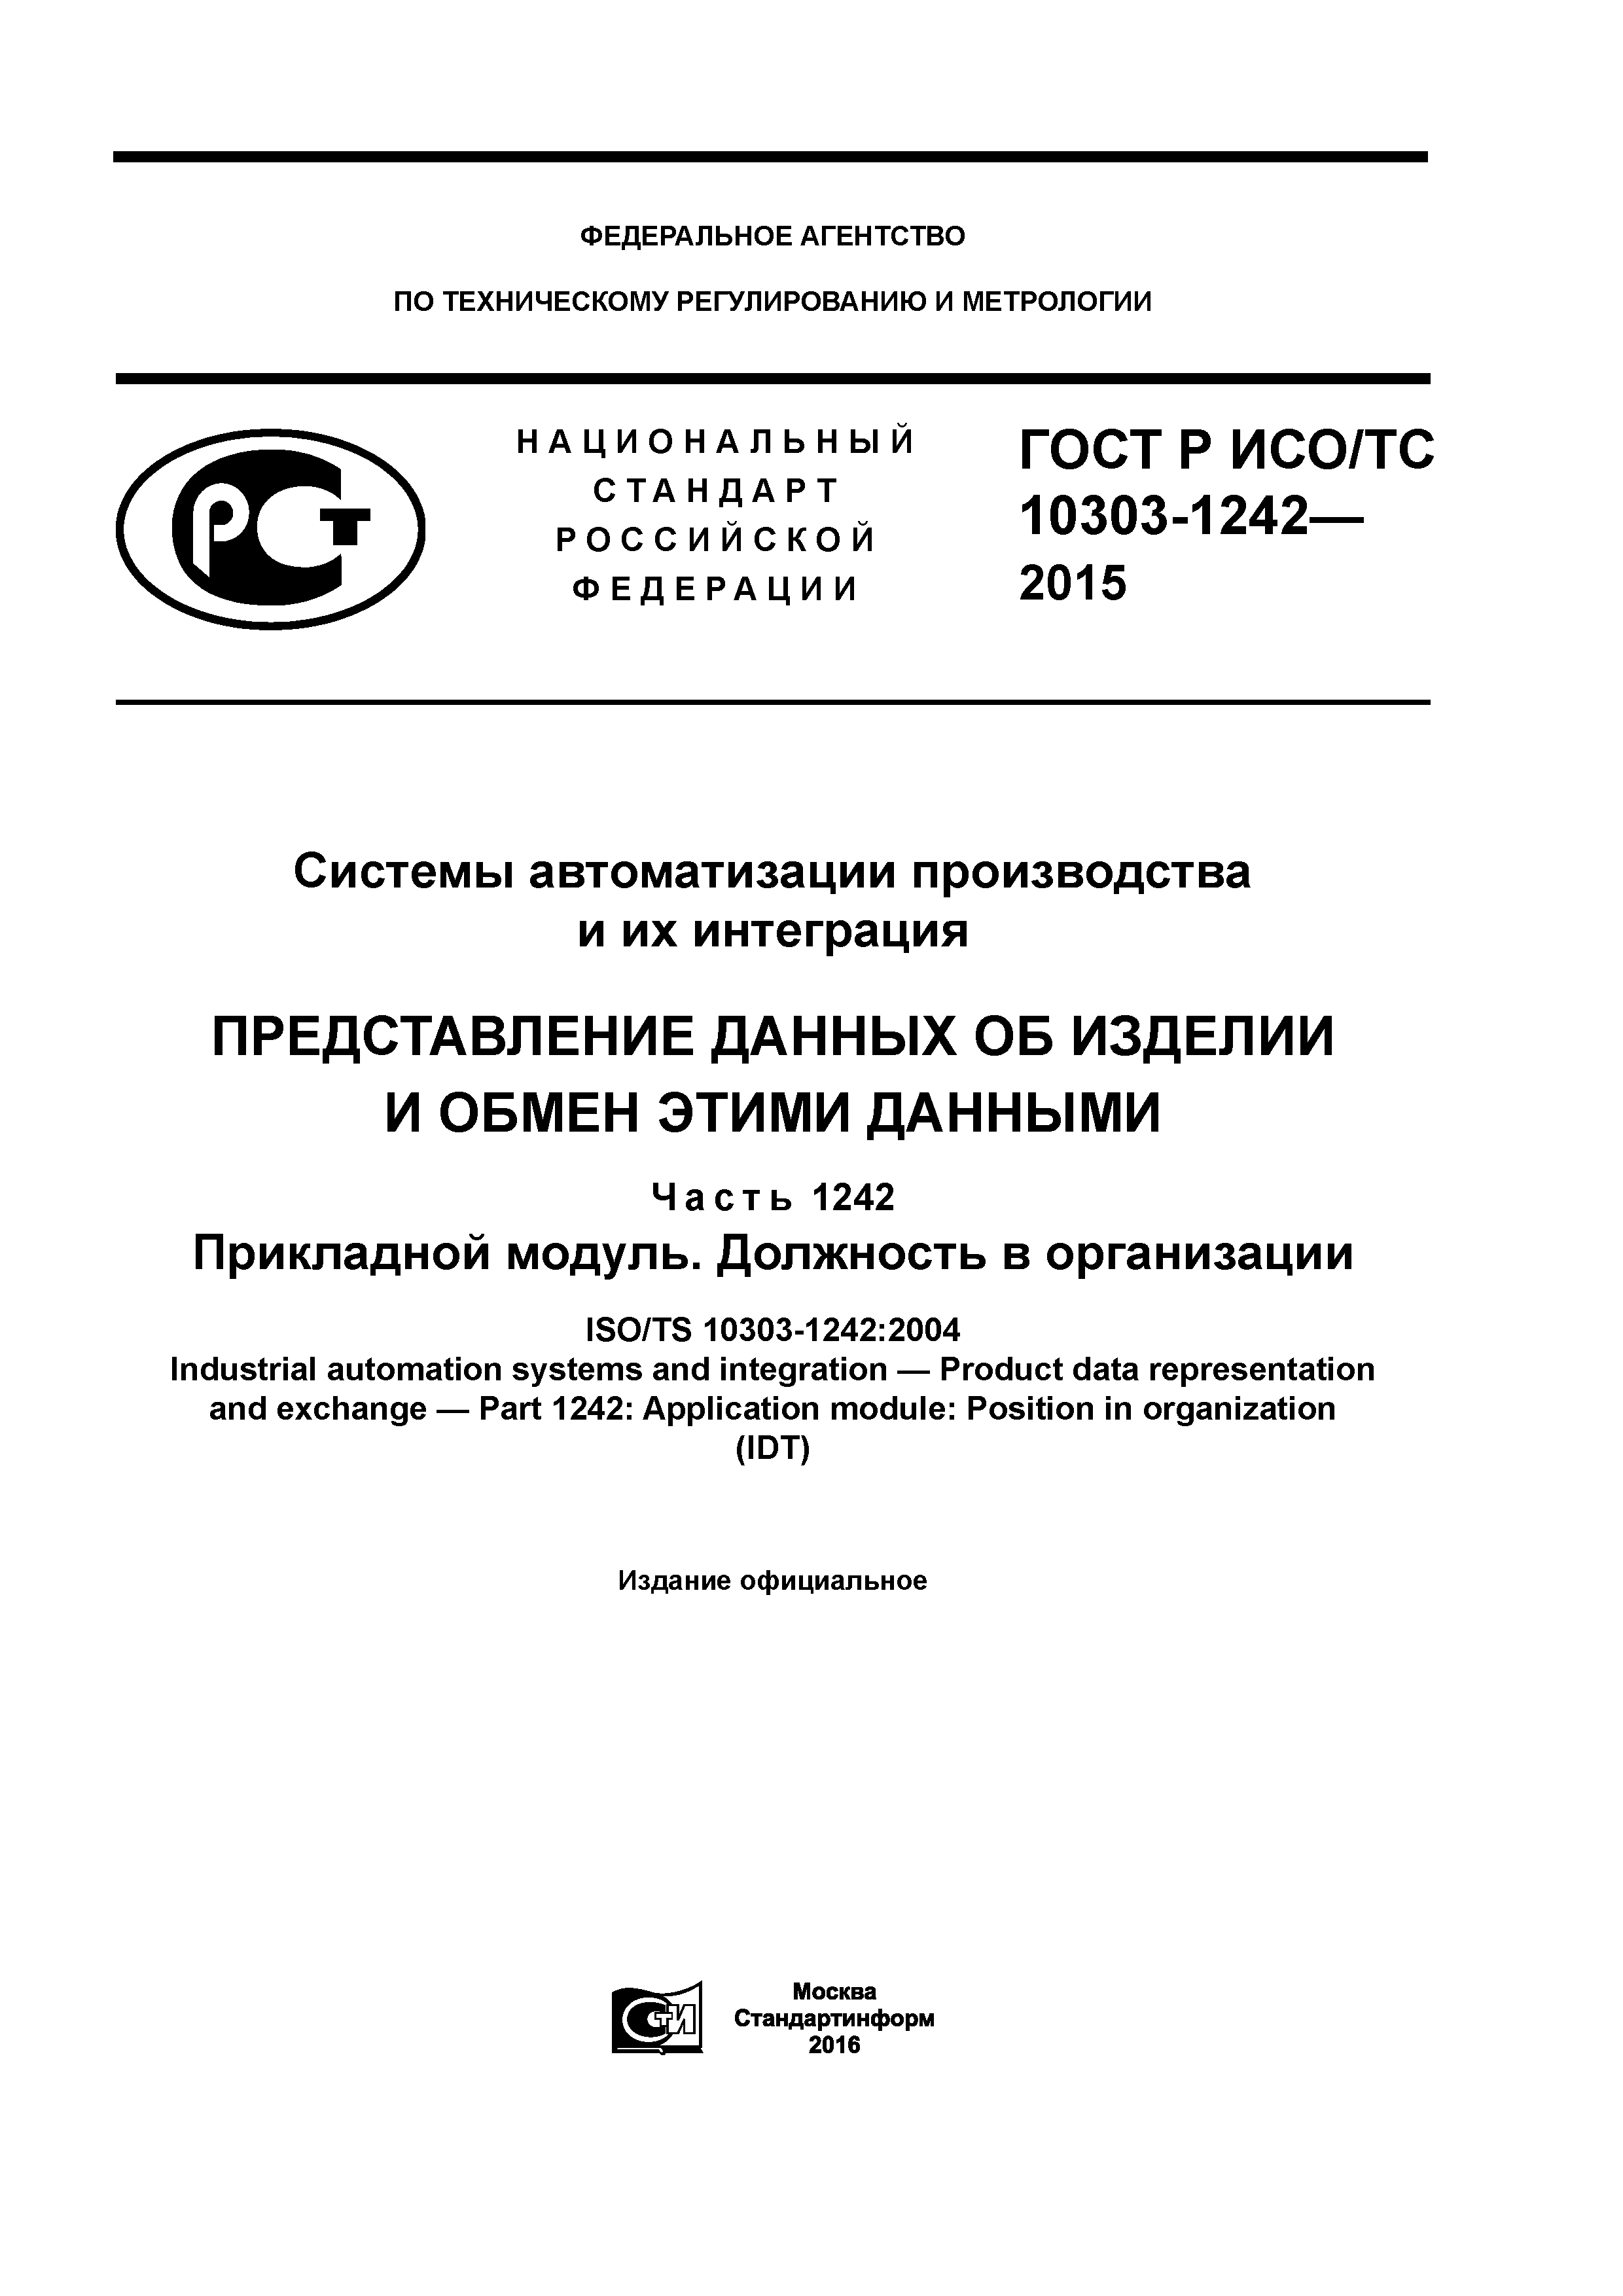 ГОСТ Р ИСО/ТС 10303-1242-2015